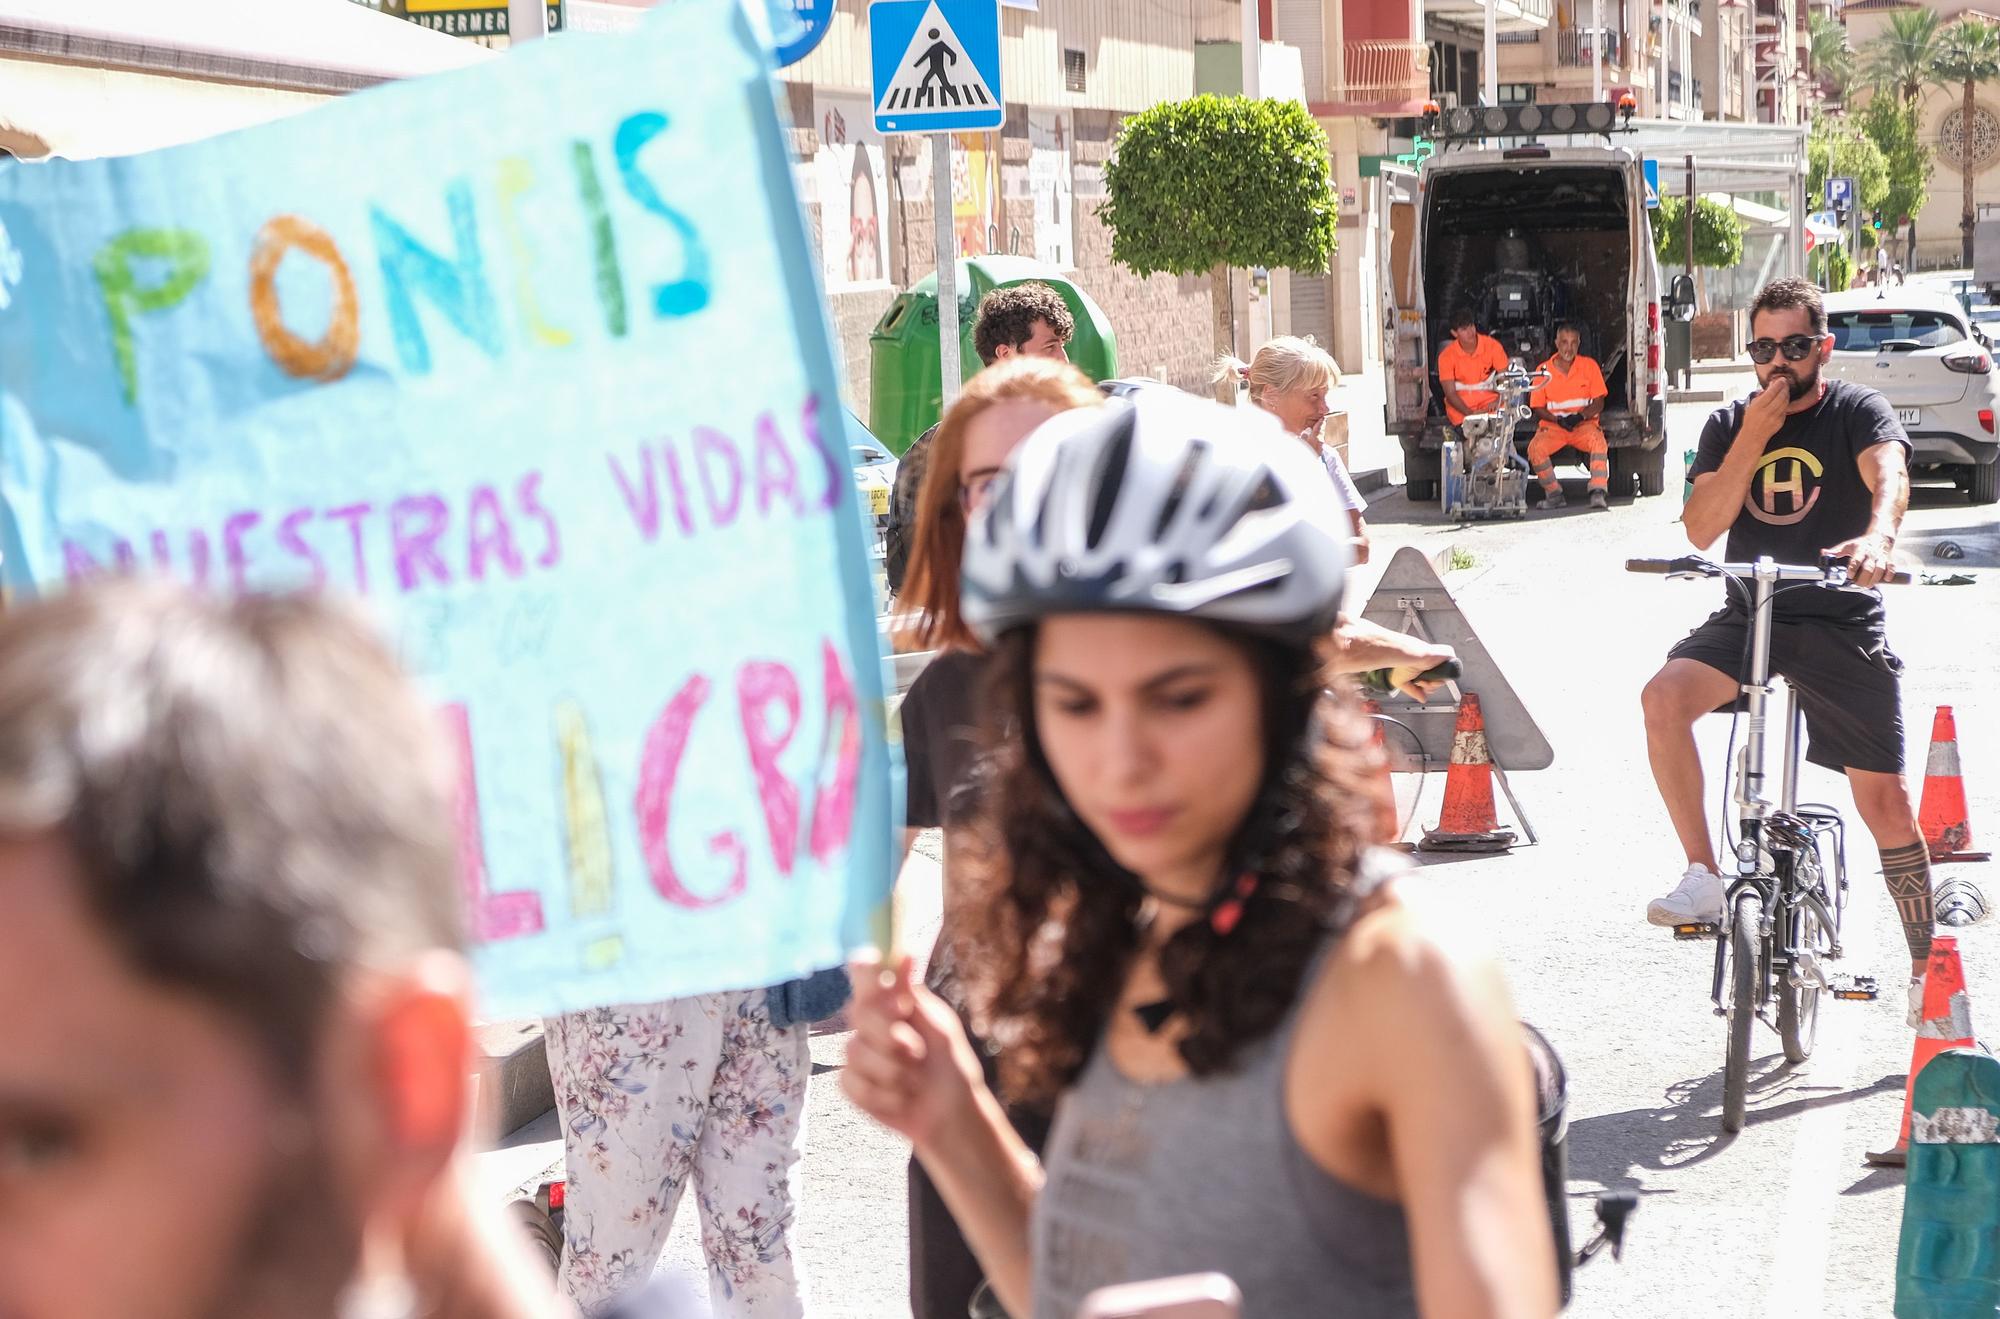 Así ha sido la protesta contra la eliminación del carril bici de Jose Maria Buck de Elche